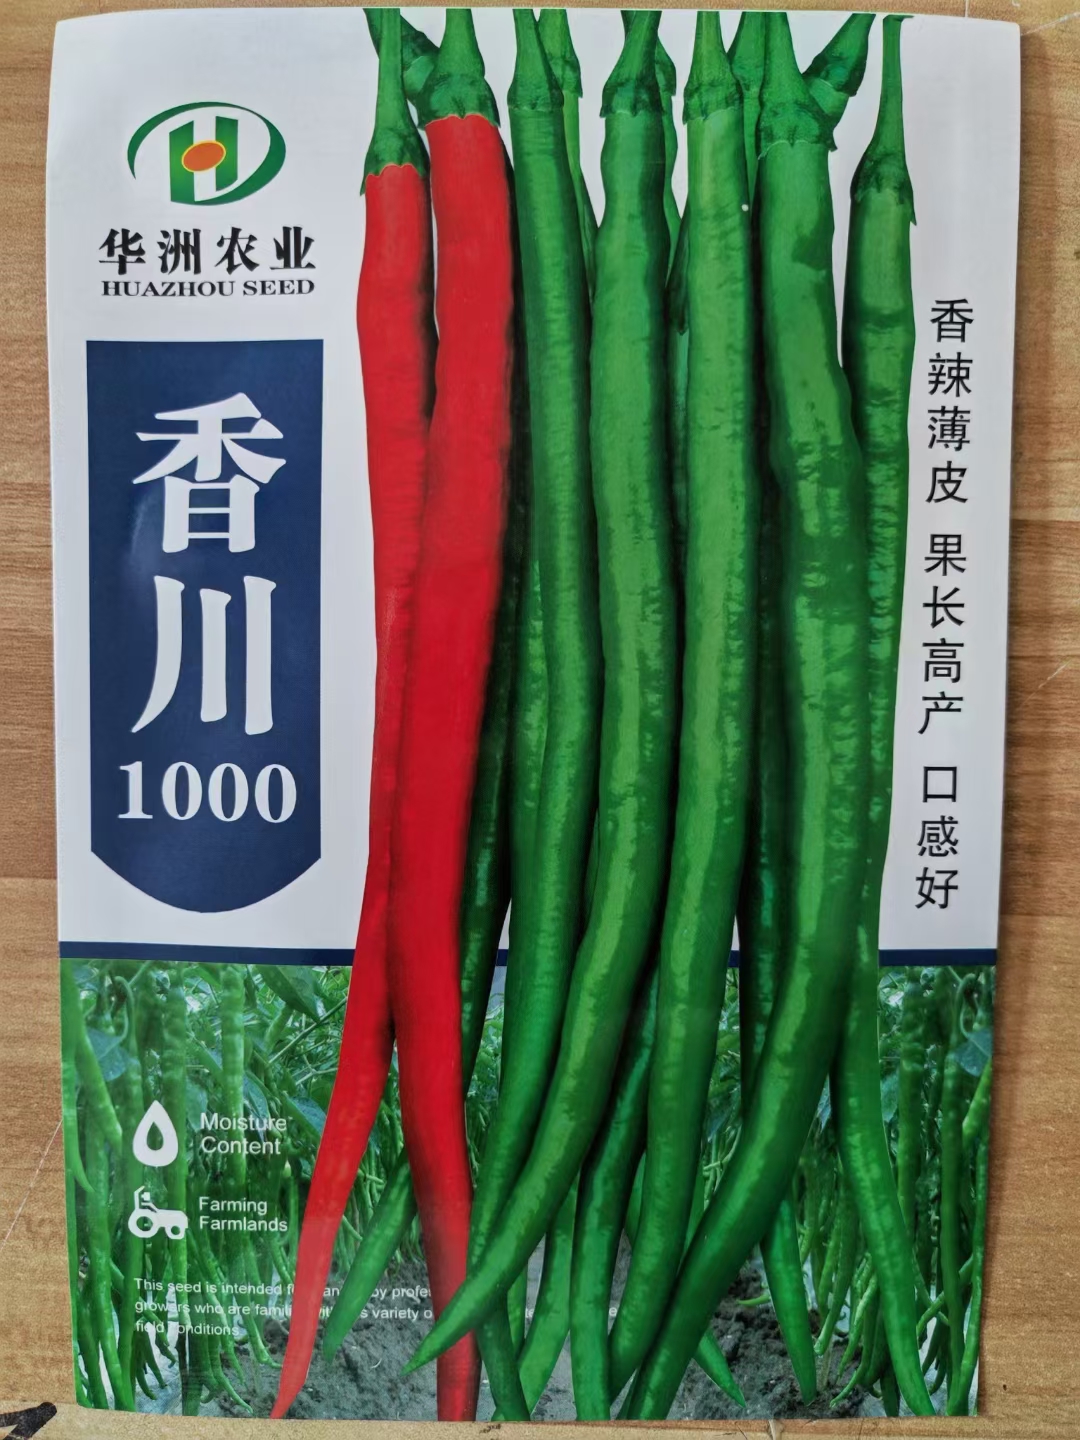 夏邑县线椒种子各种优良线椒种子 辣味浓 耐热耐湿抗性好商品性优